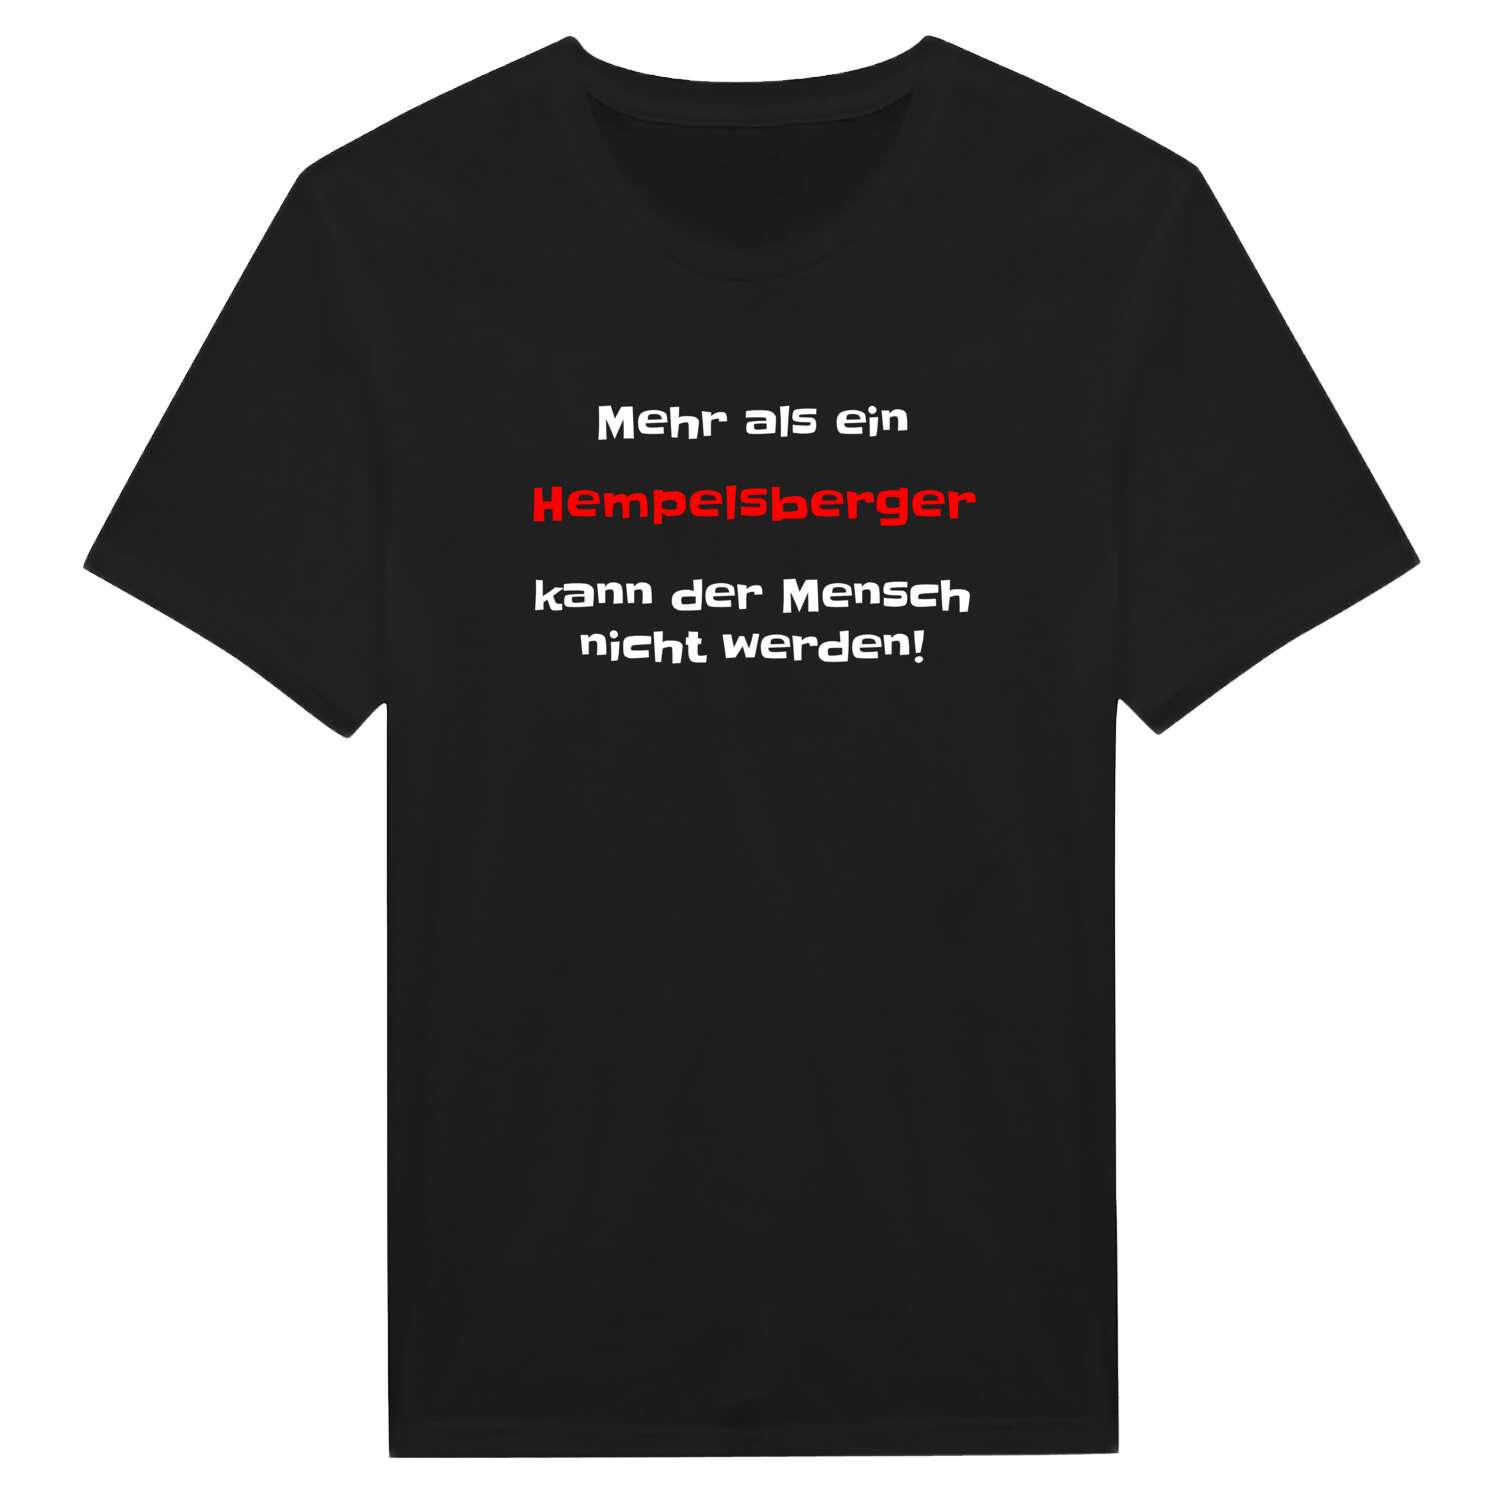 Hempelsberg T-Shirt »Mehr als ein«